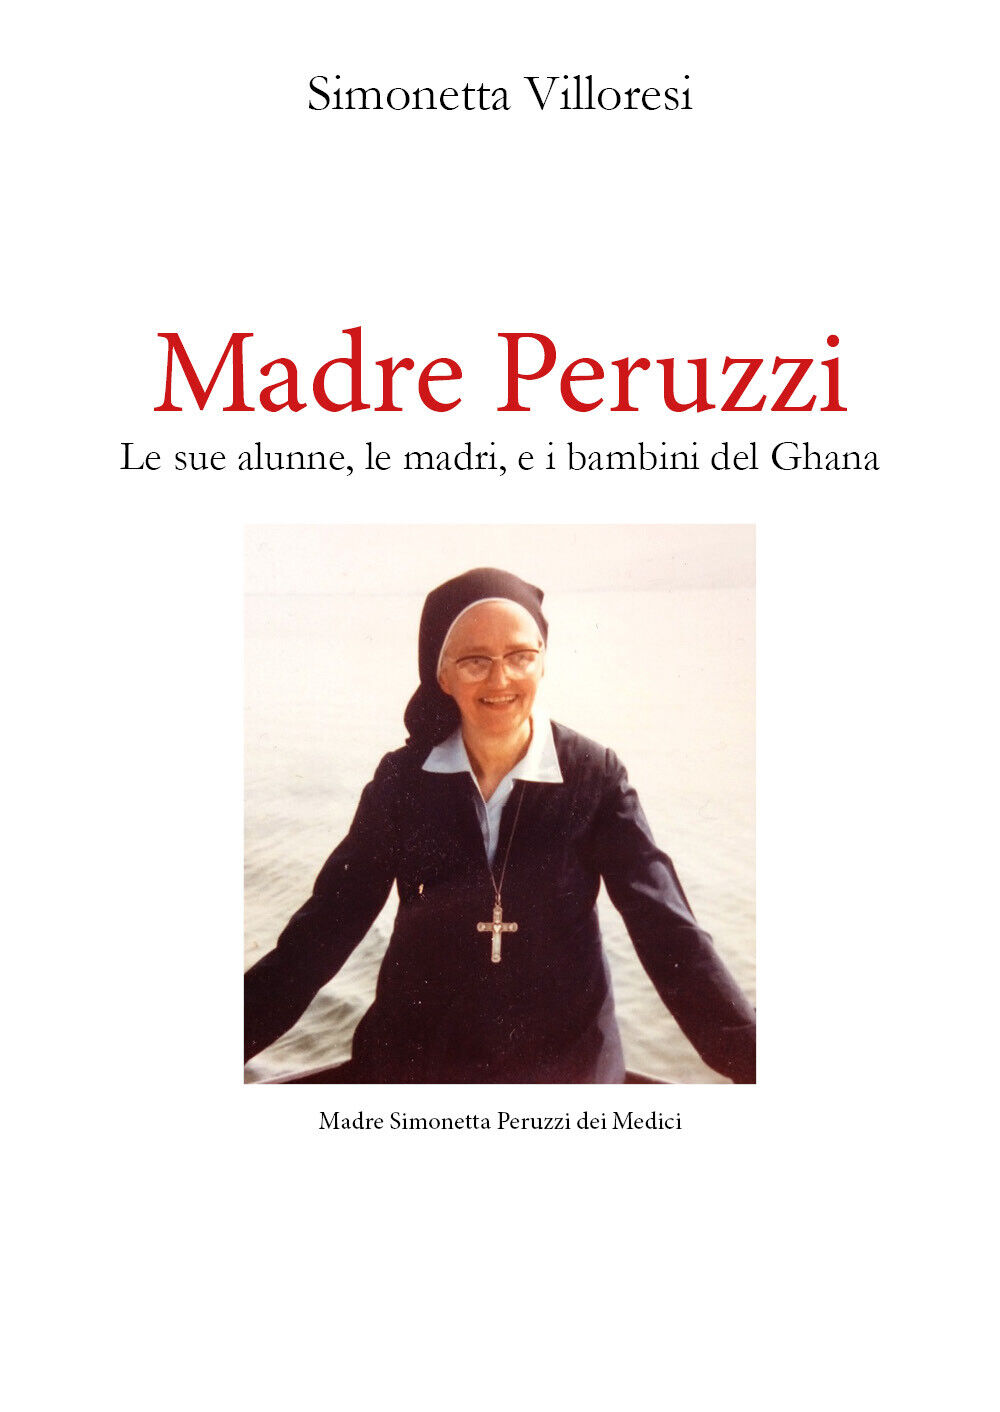 Madre Peruzzi di Simonetta Villoresi,  2021,  Youcanprint libro usato